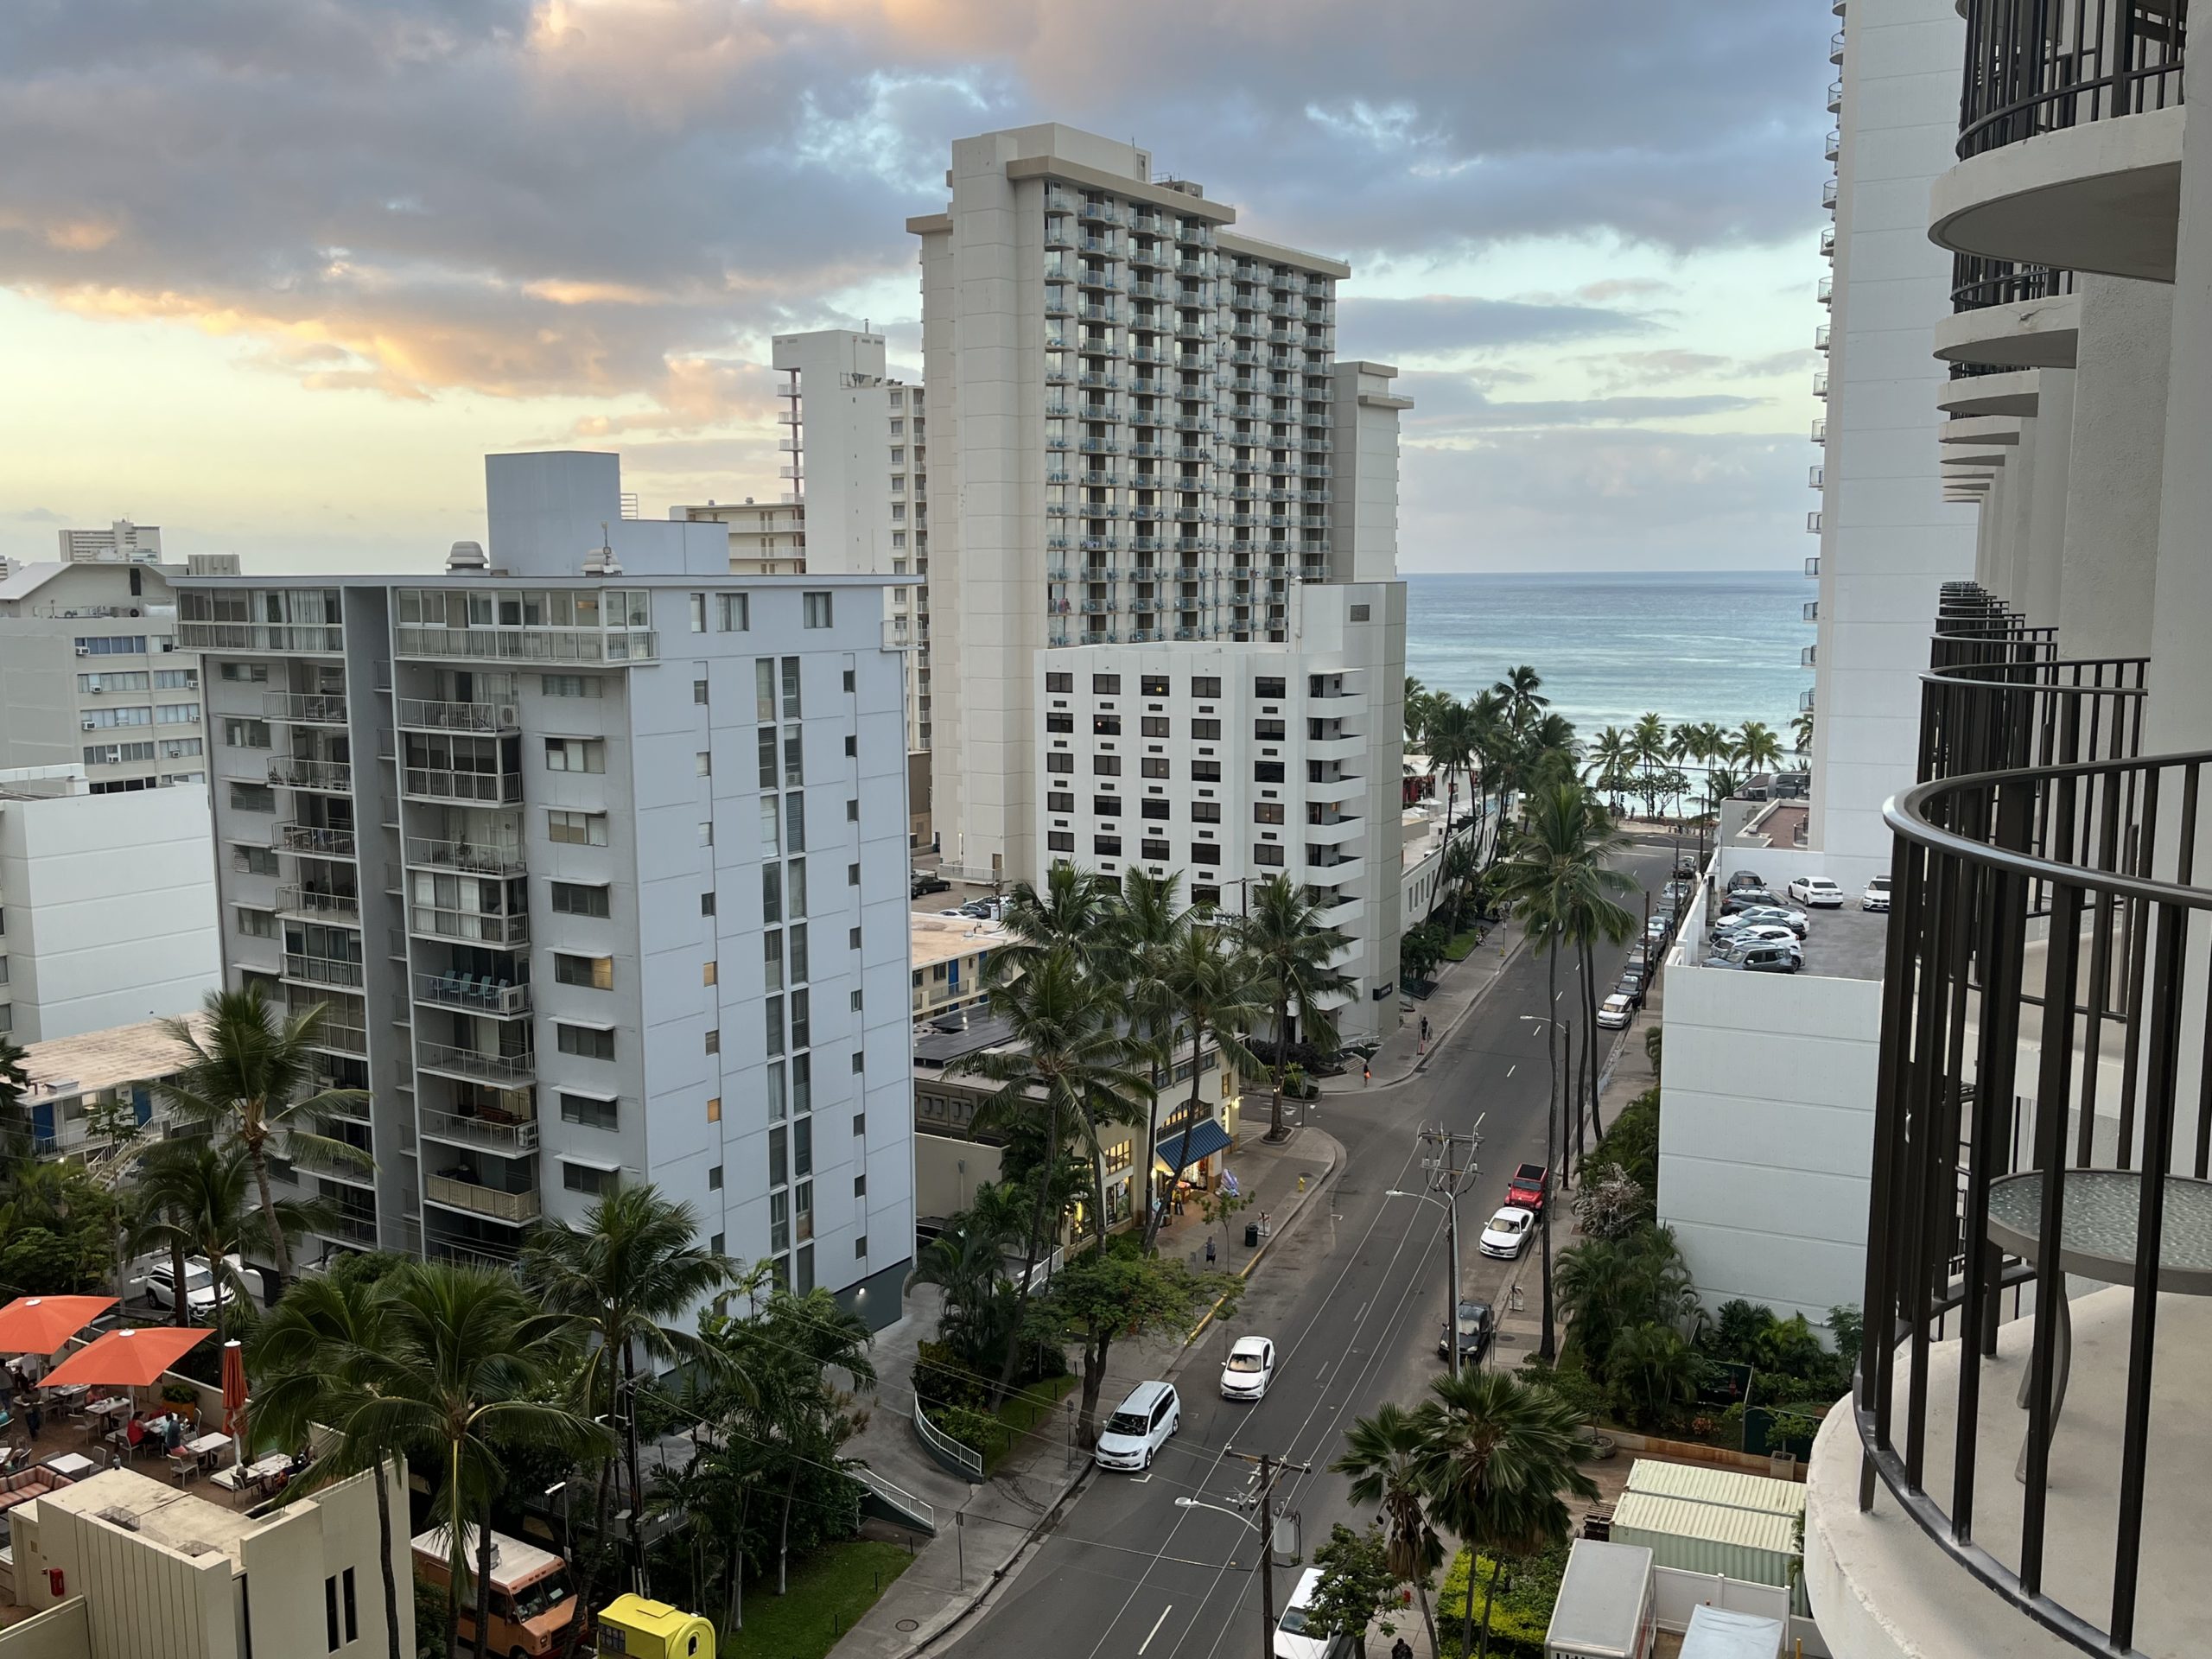 Marriott Waikiki Resort & Spa Review - View from Balcony